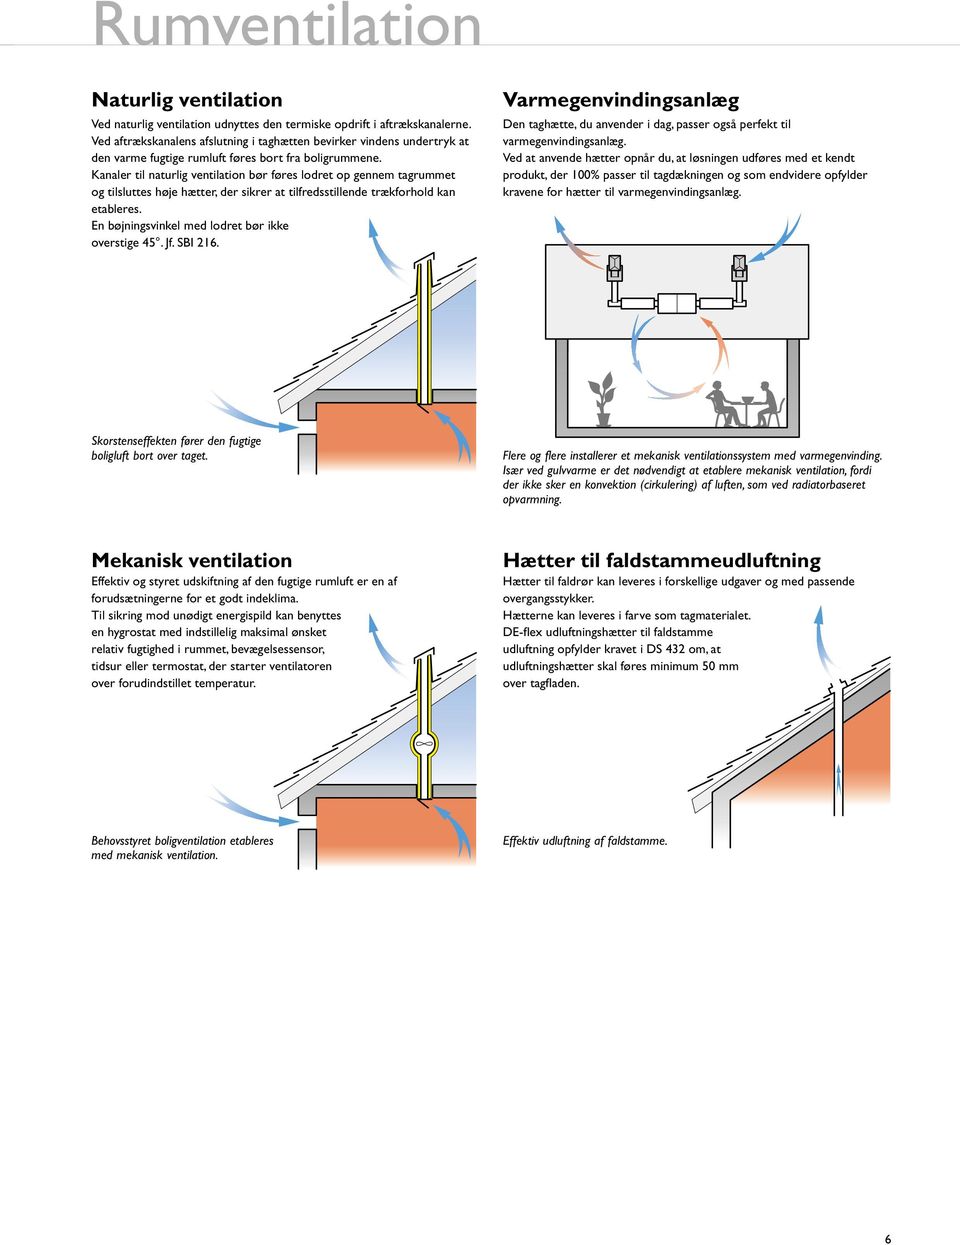 Kanaler til naturlig ventilation bør føres lodret op gennem tagruet og tilsluttes høje hætter, der sikrer at tilfredsstillende trækforhold kan etableres.